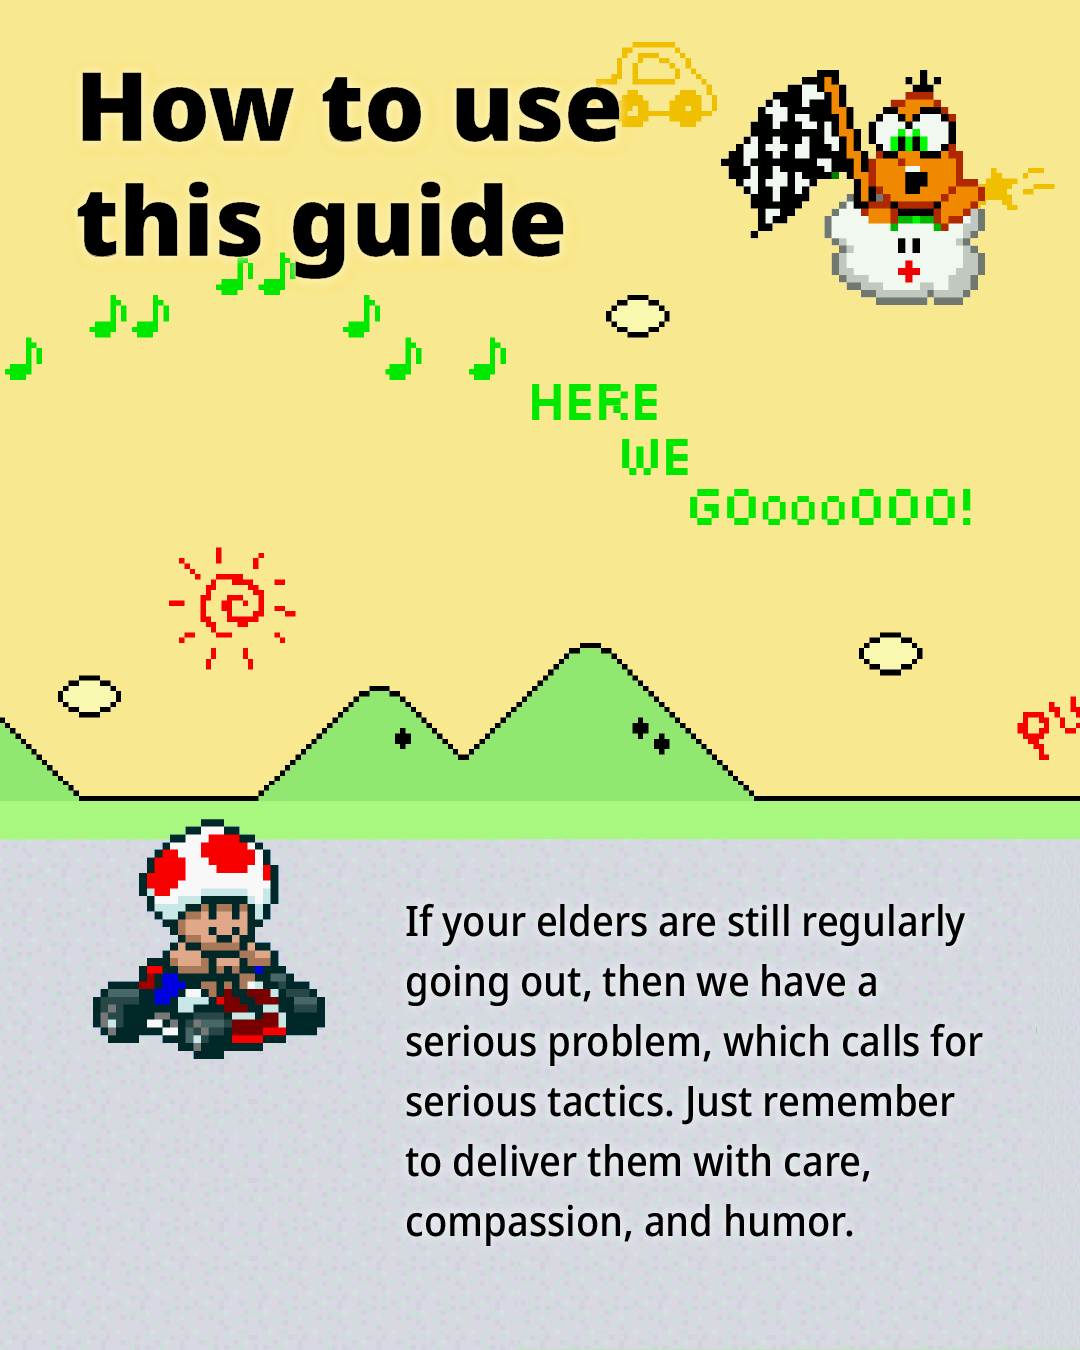 Elders guide image 2/10